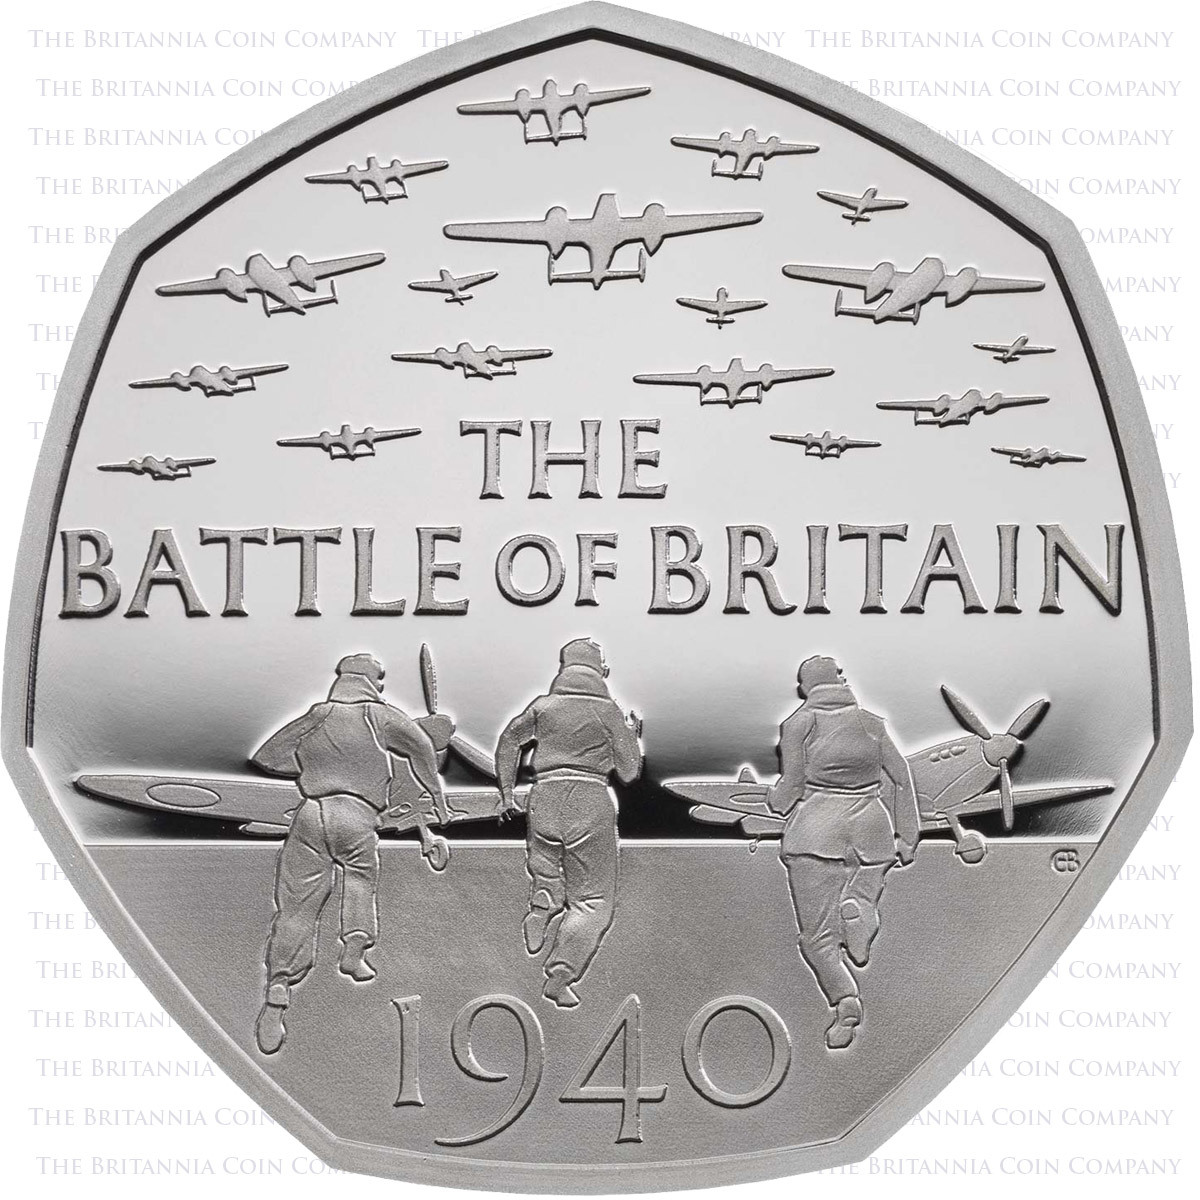 Battle of Britain 50p